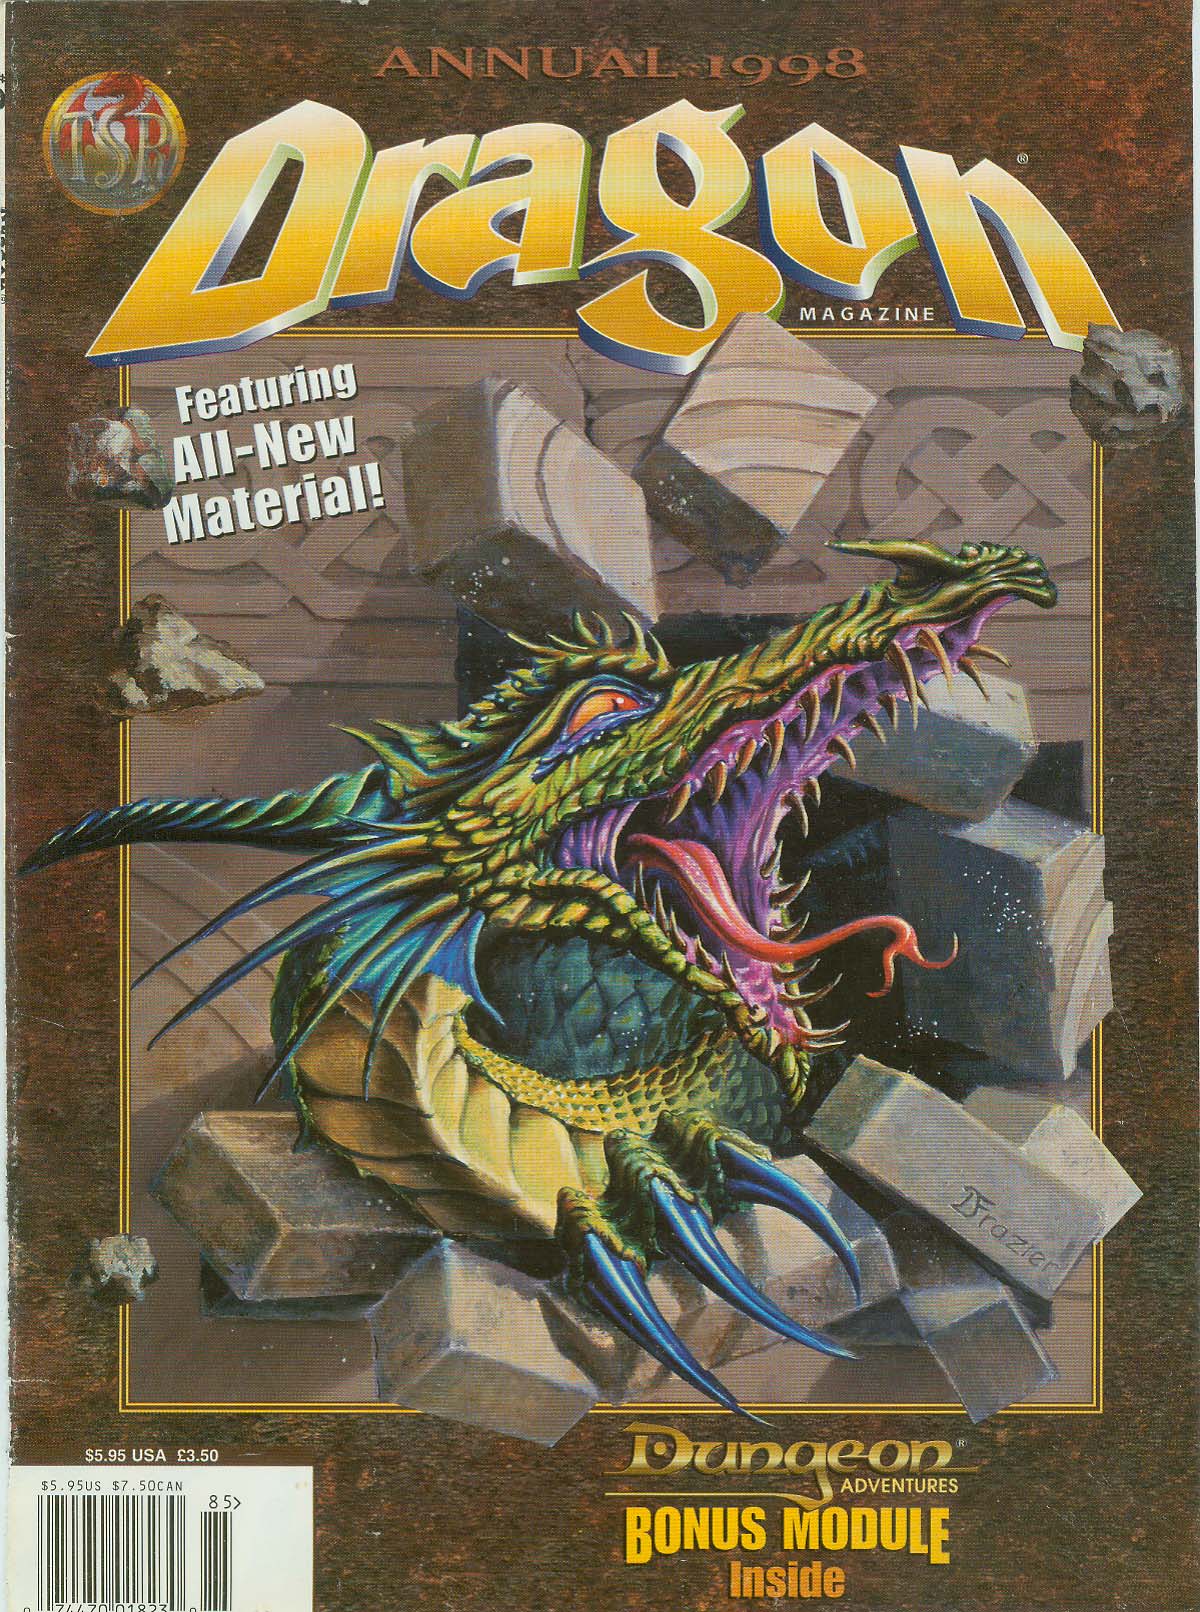 Dragon Magazine Annual 1998Cover art